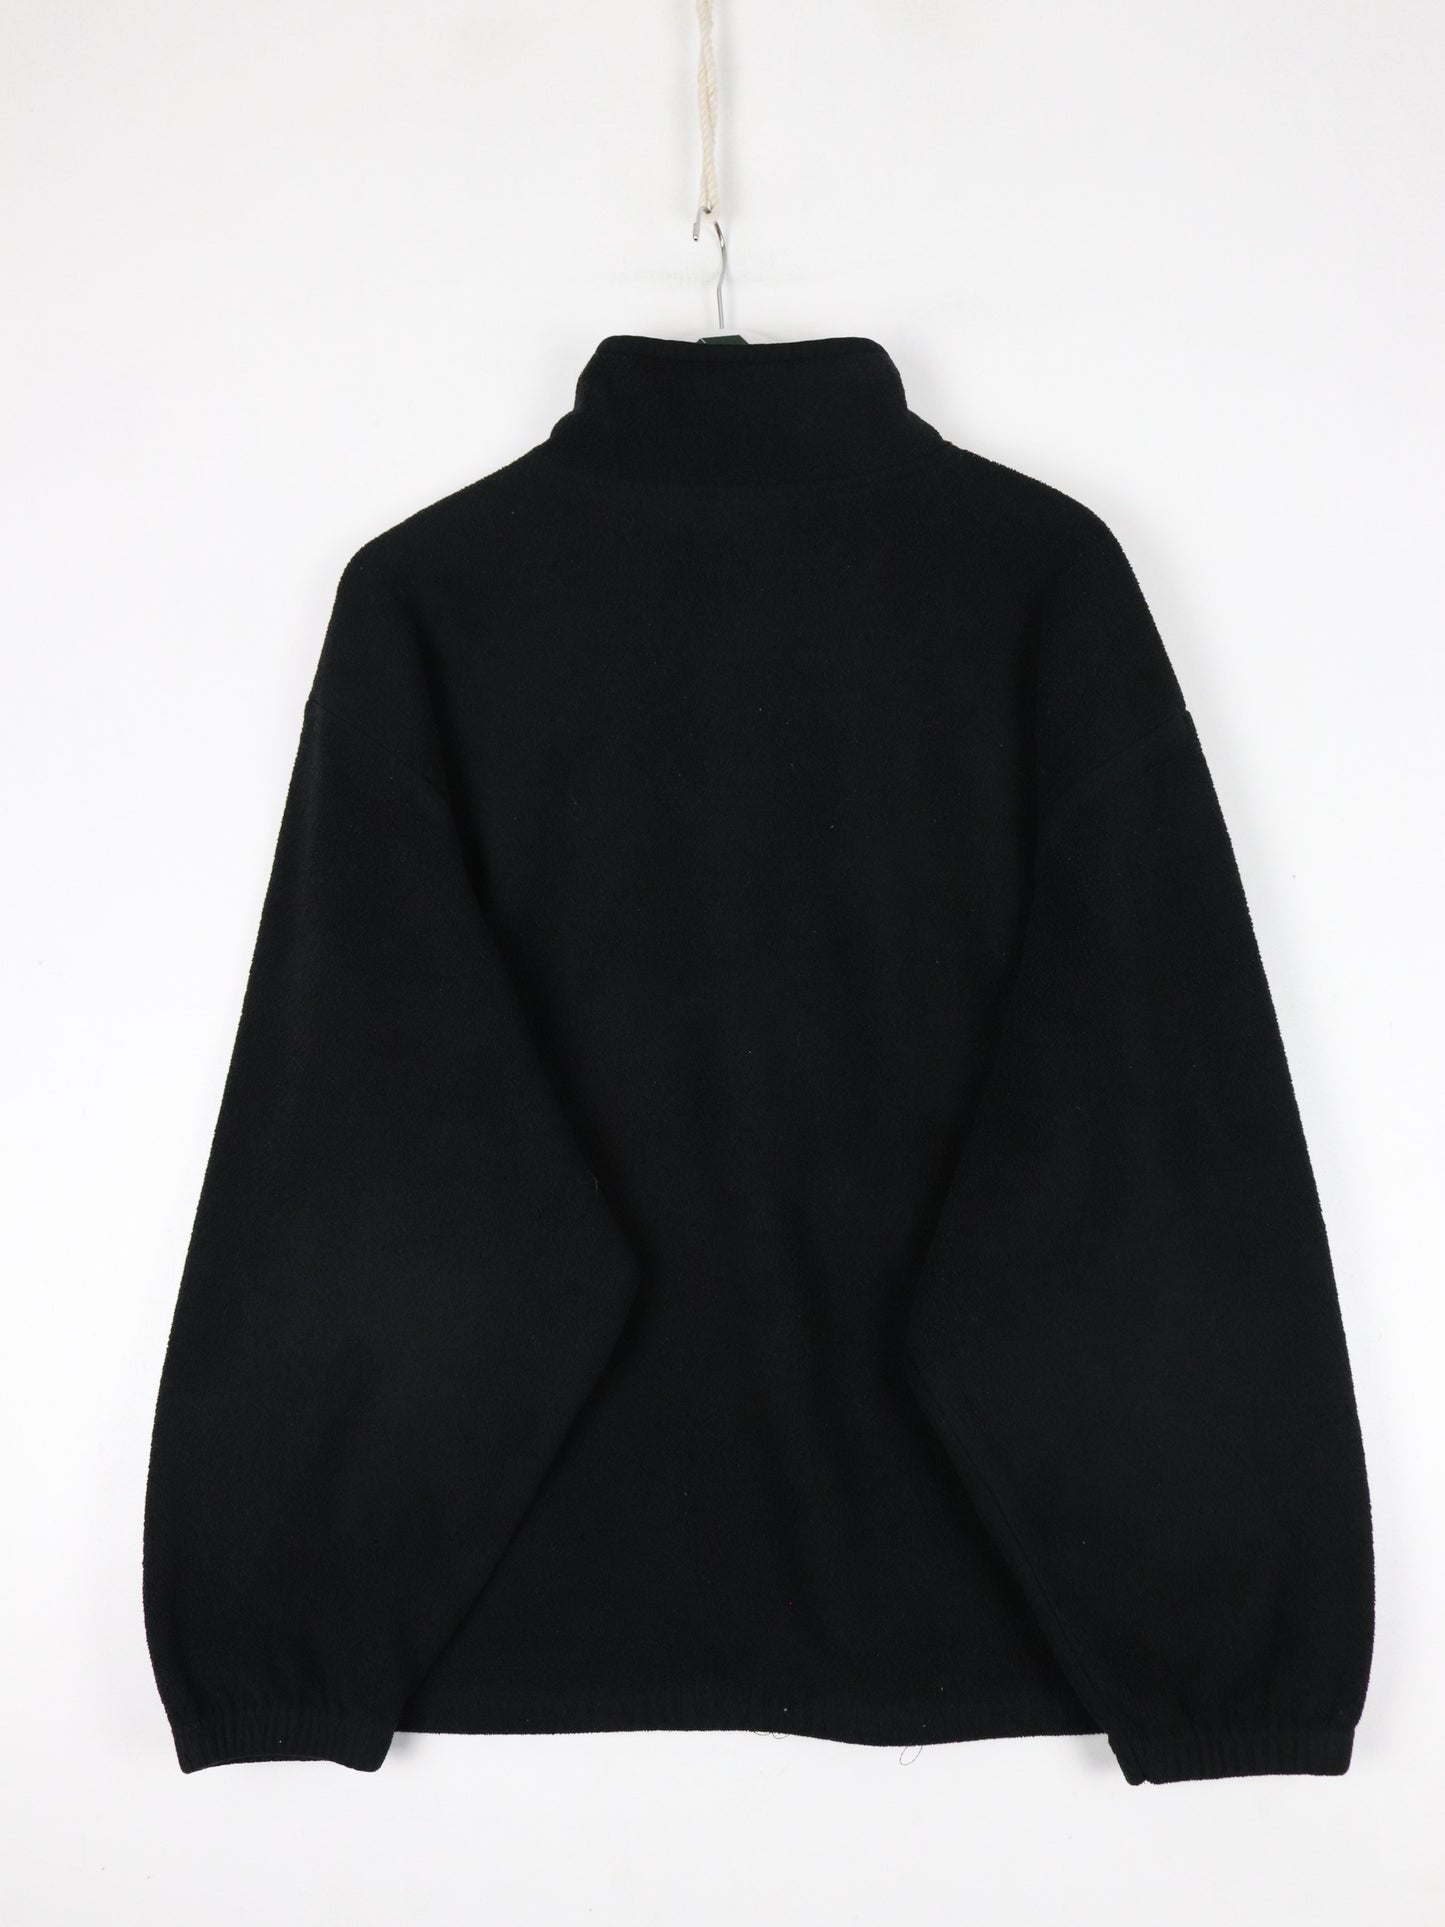 Vintage ESPN Sweater Mens XL Black Fleece Quarter Zip